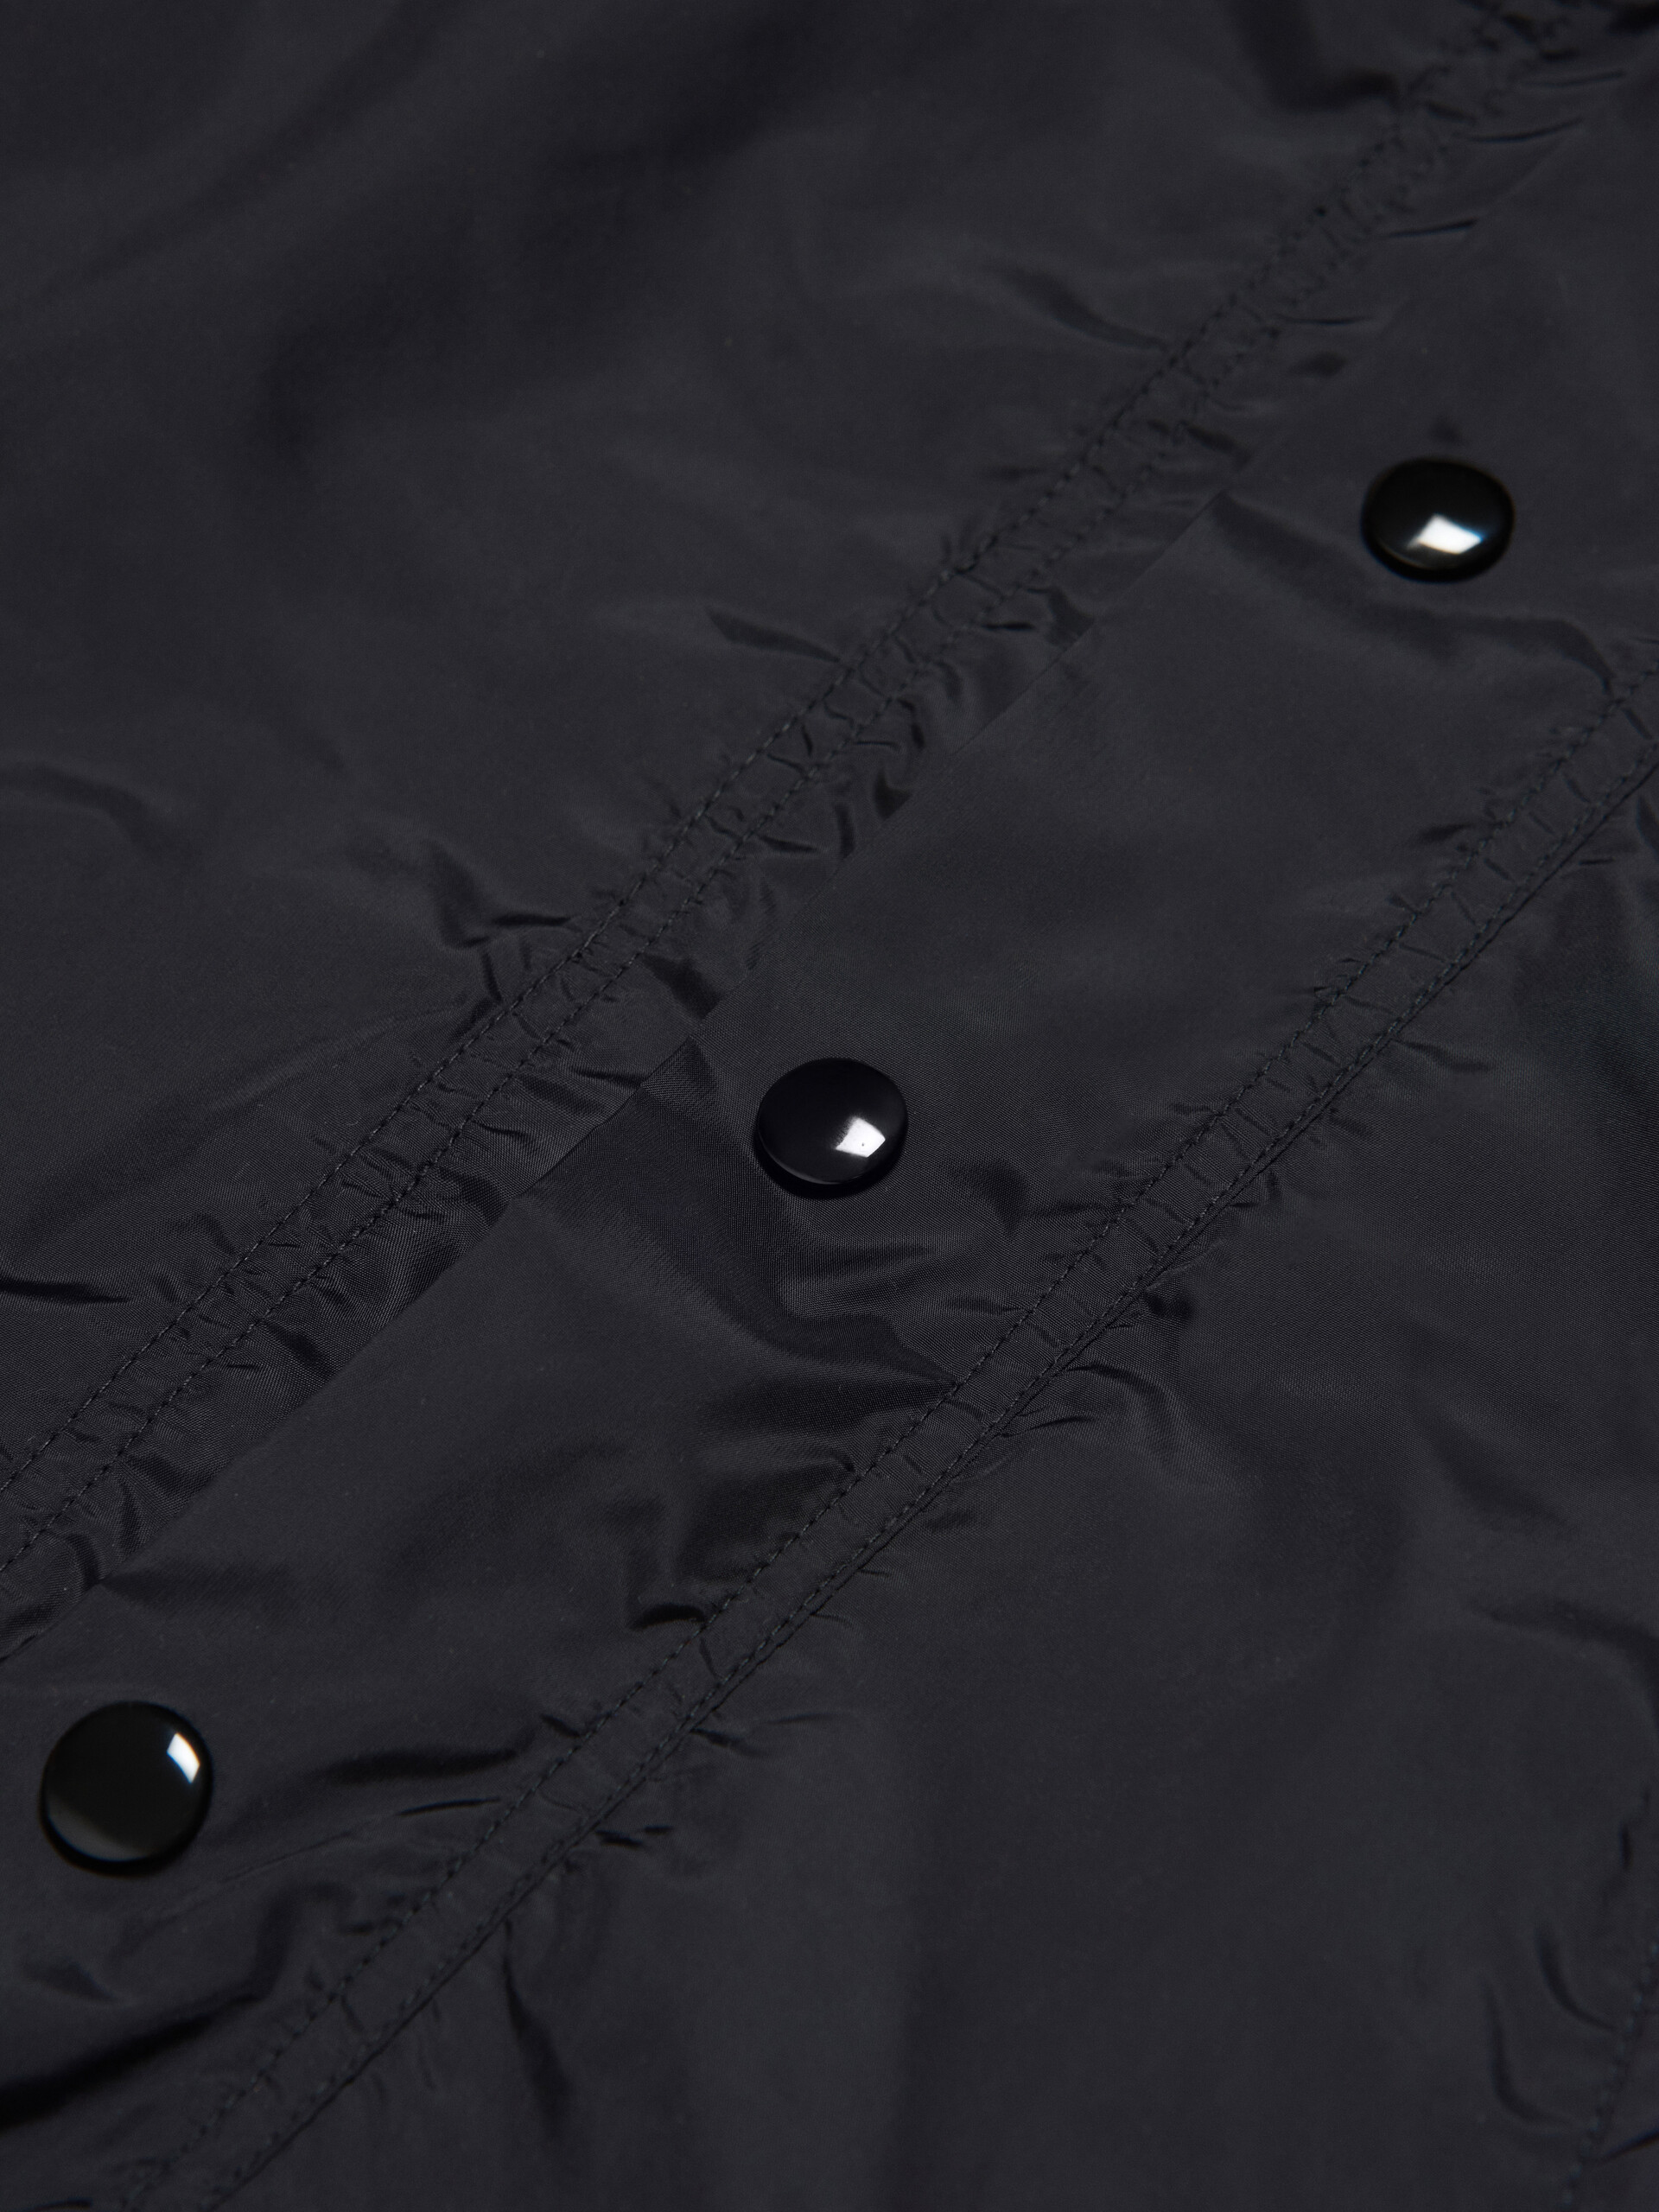 Chaqueta impermeable con capucha negra con logotipo en las mangas - Chaquetas - Image 4